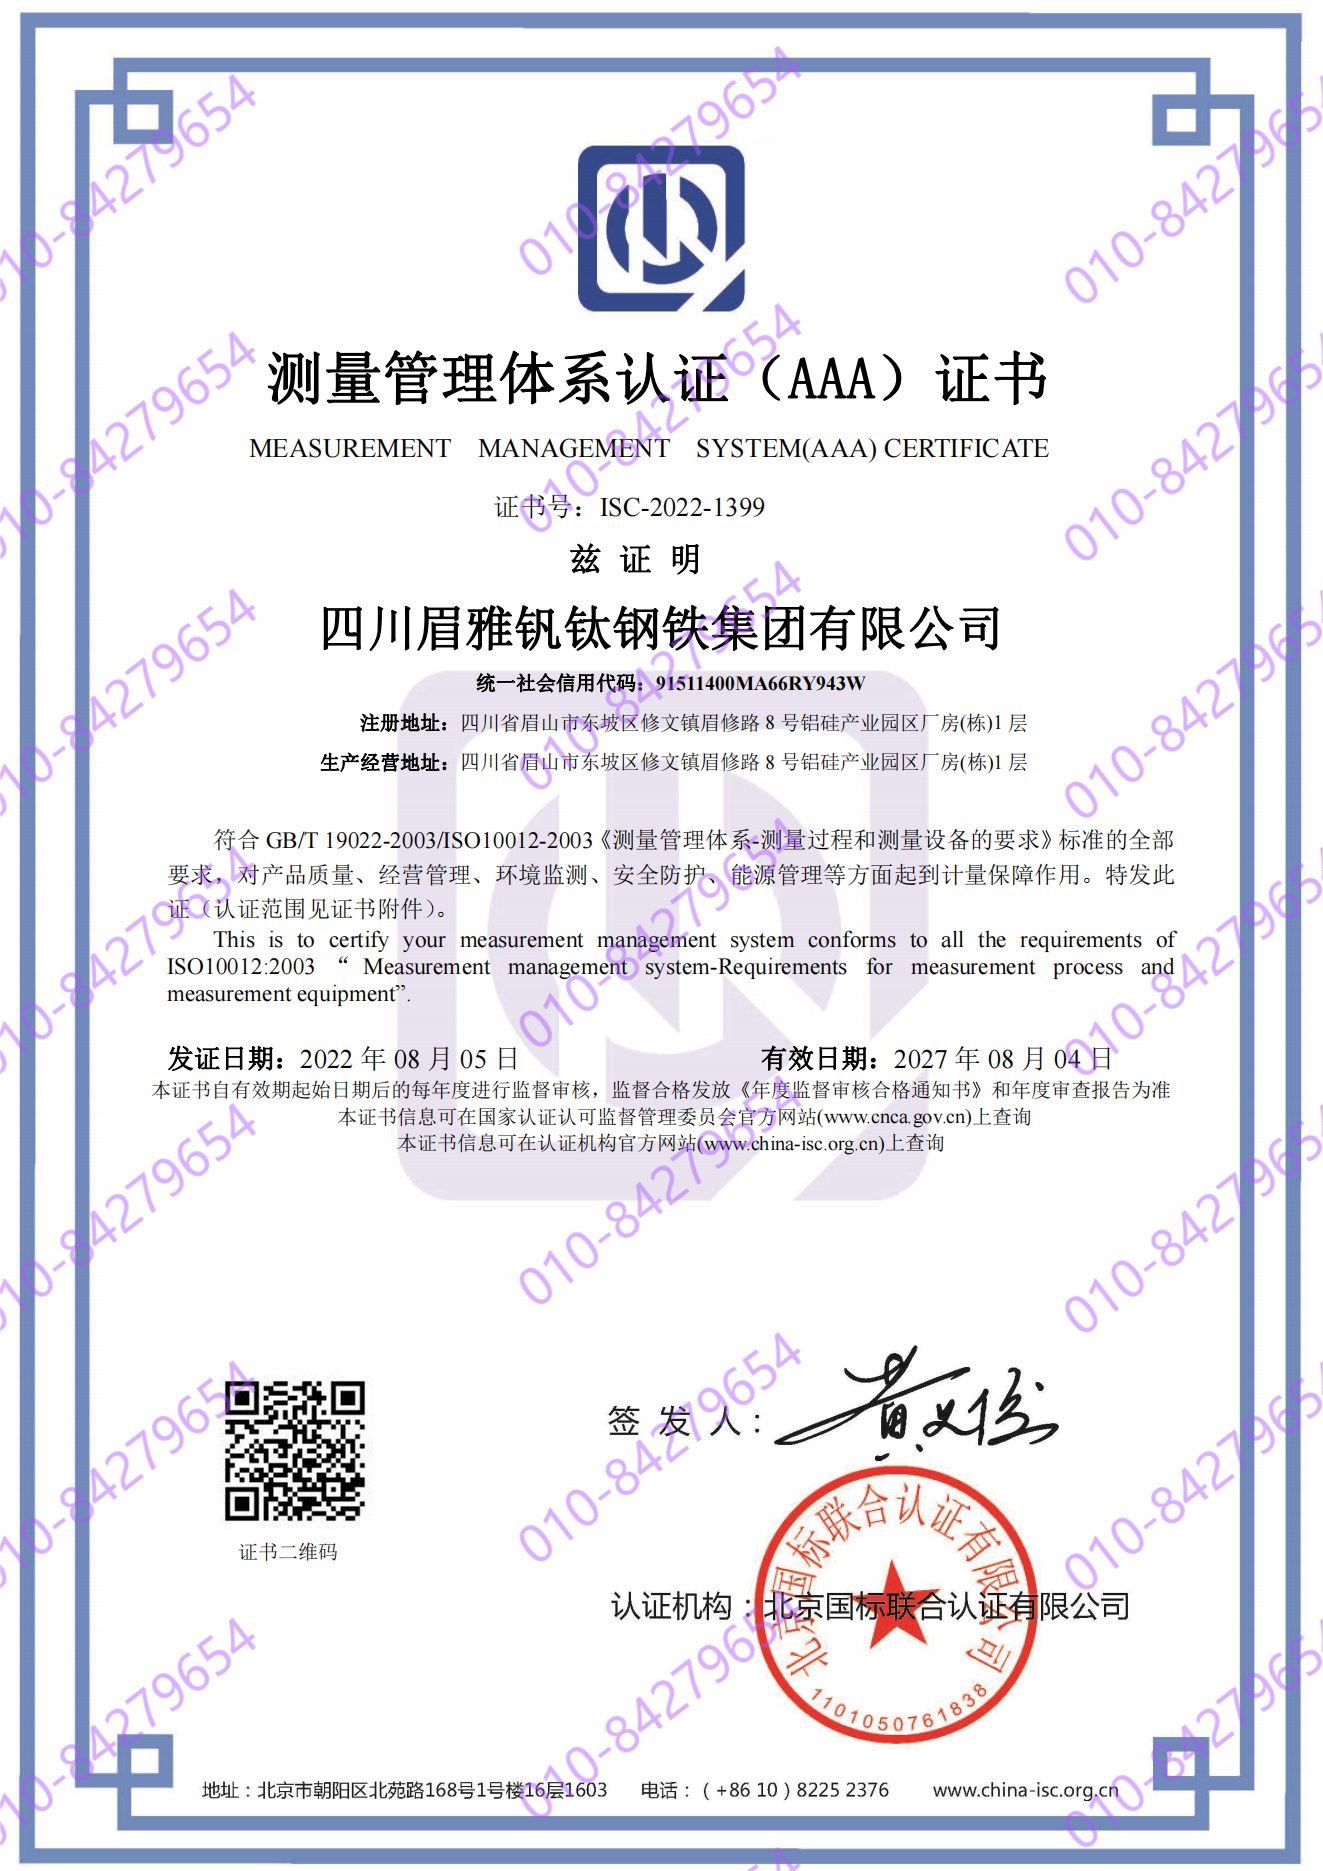 四川眉雅钒钛钢铁集团有限公司  喜获“测量管理体系认证（AAA）证书”